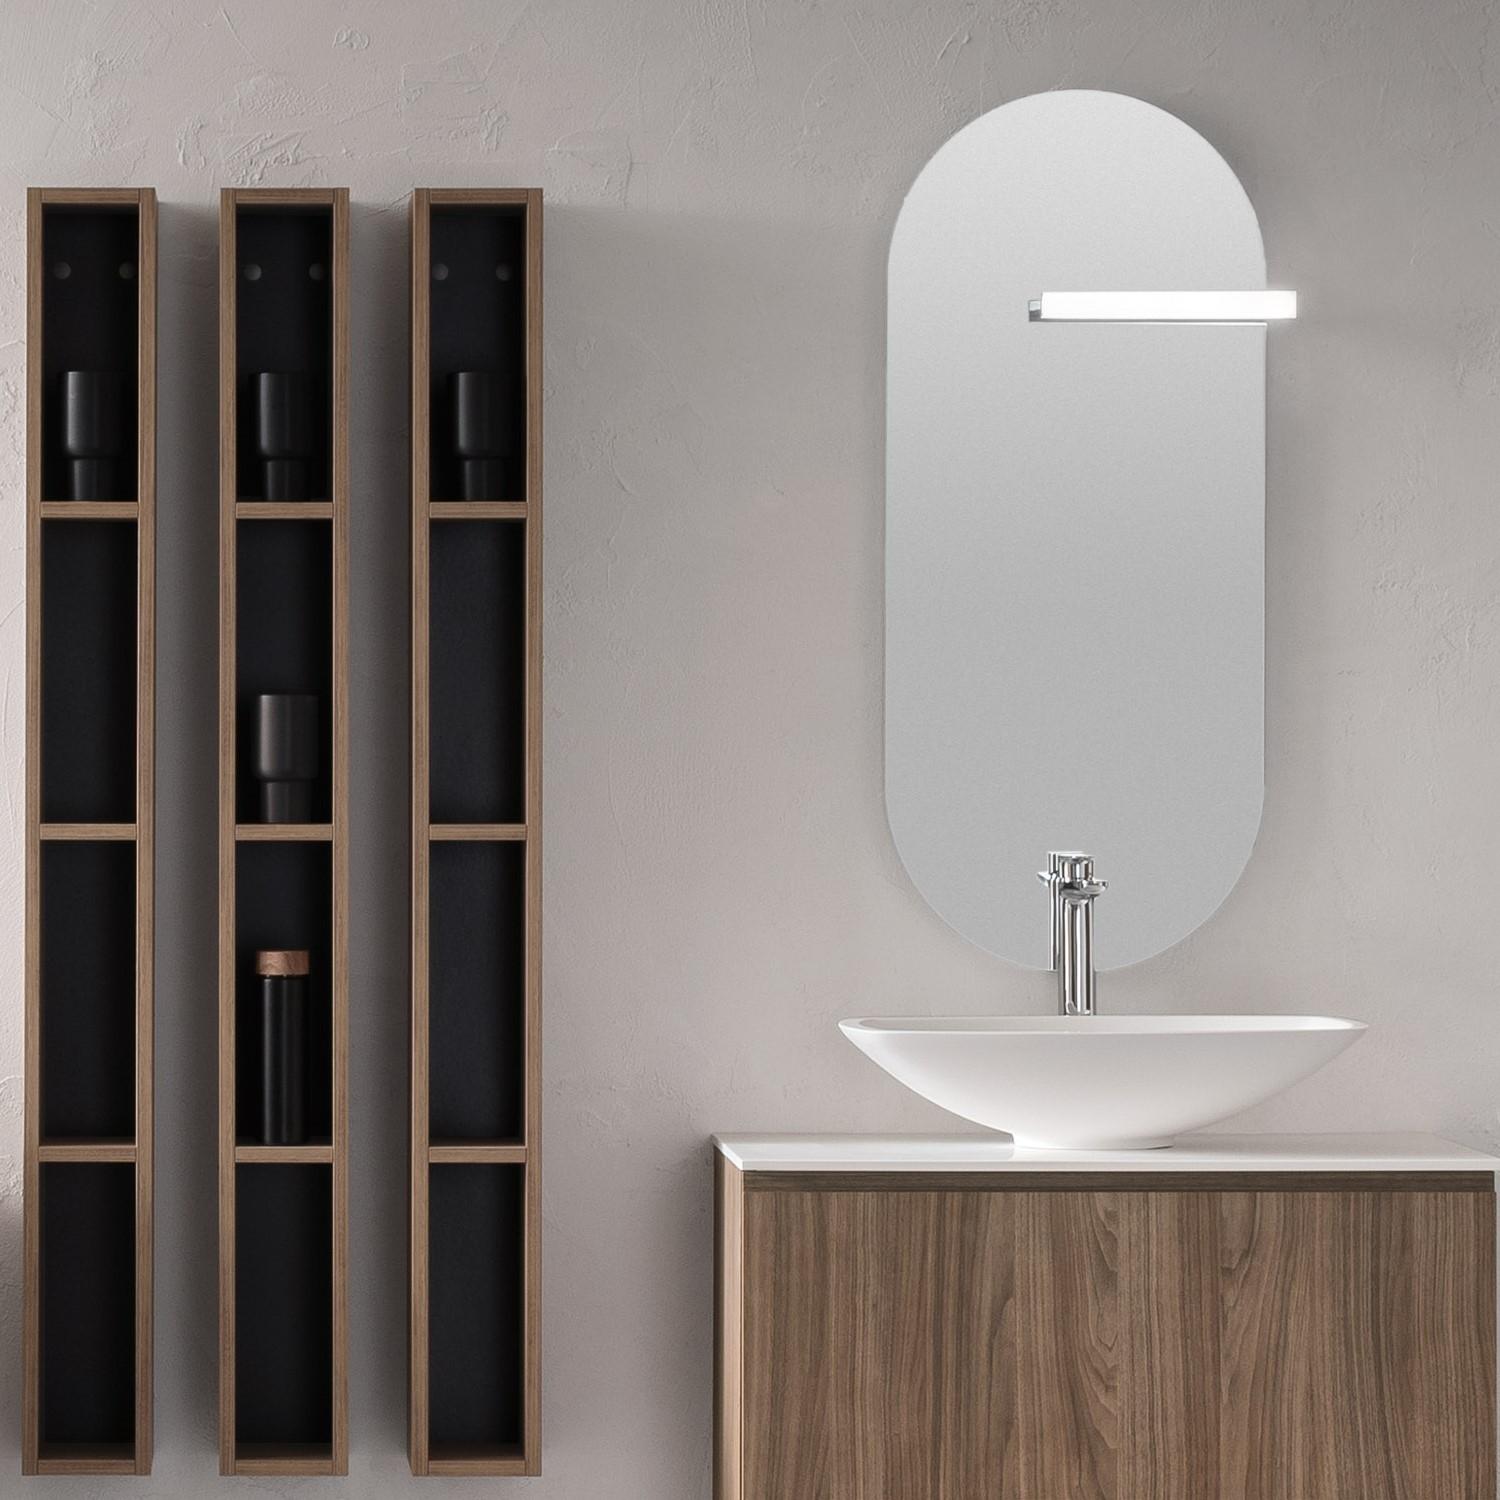 LOOK ARCO Specchio ovale con cornice per bagno By Artceram